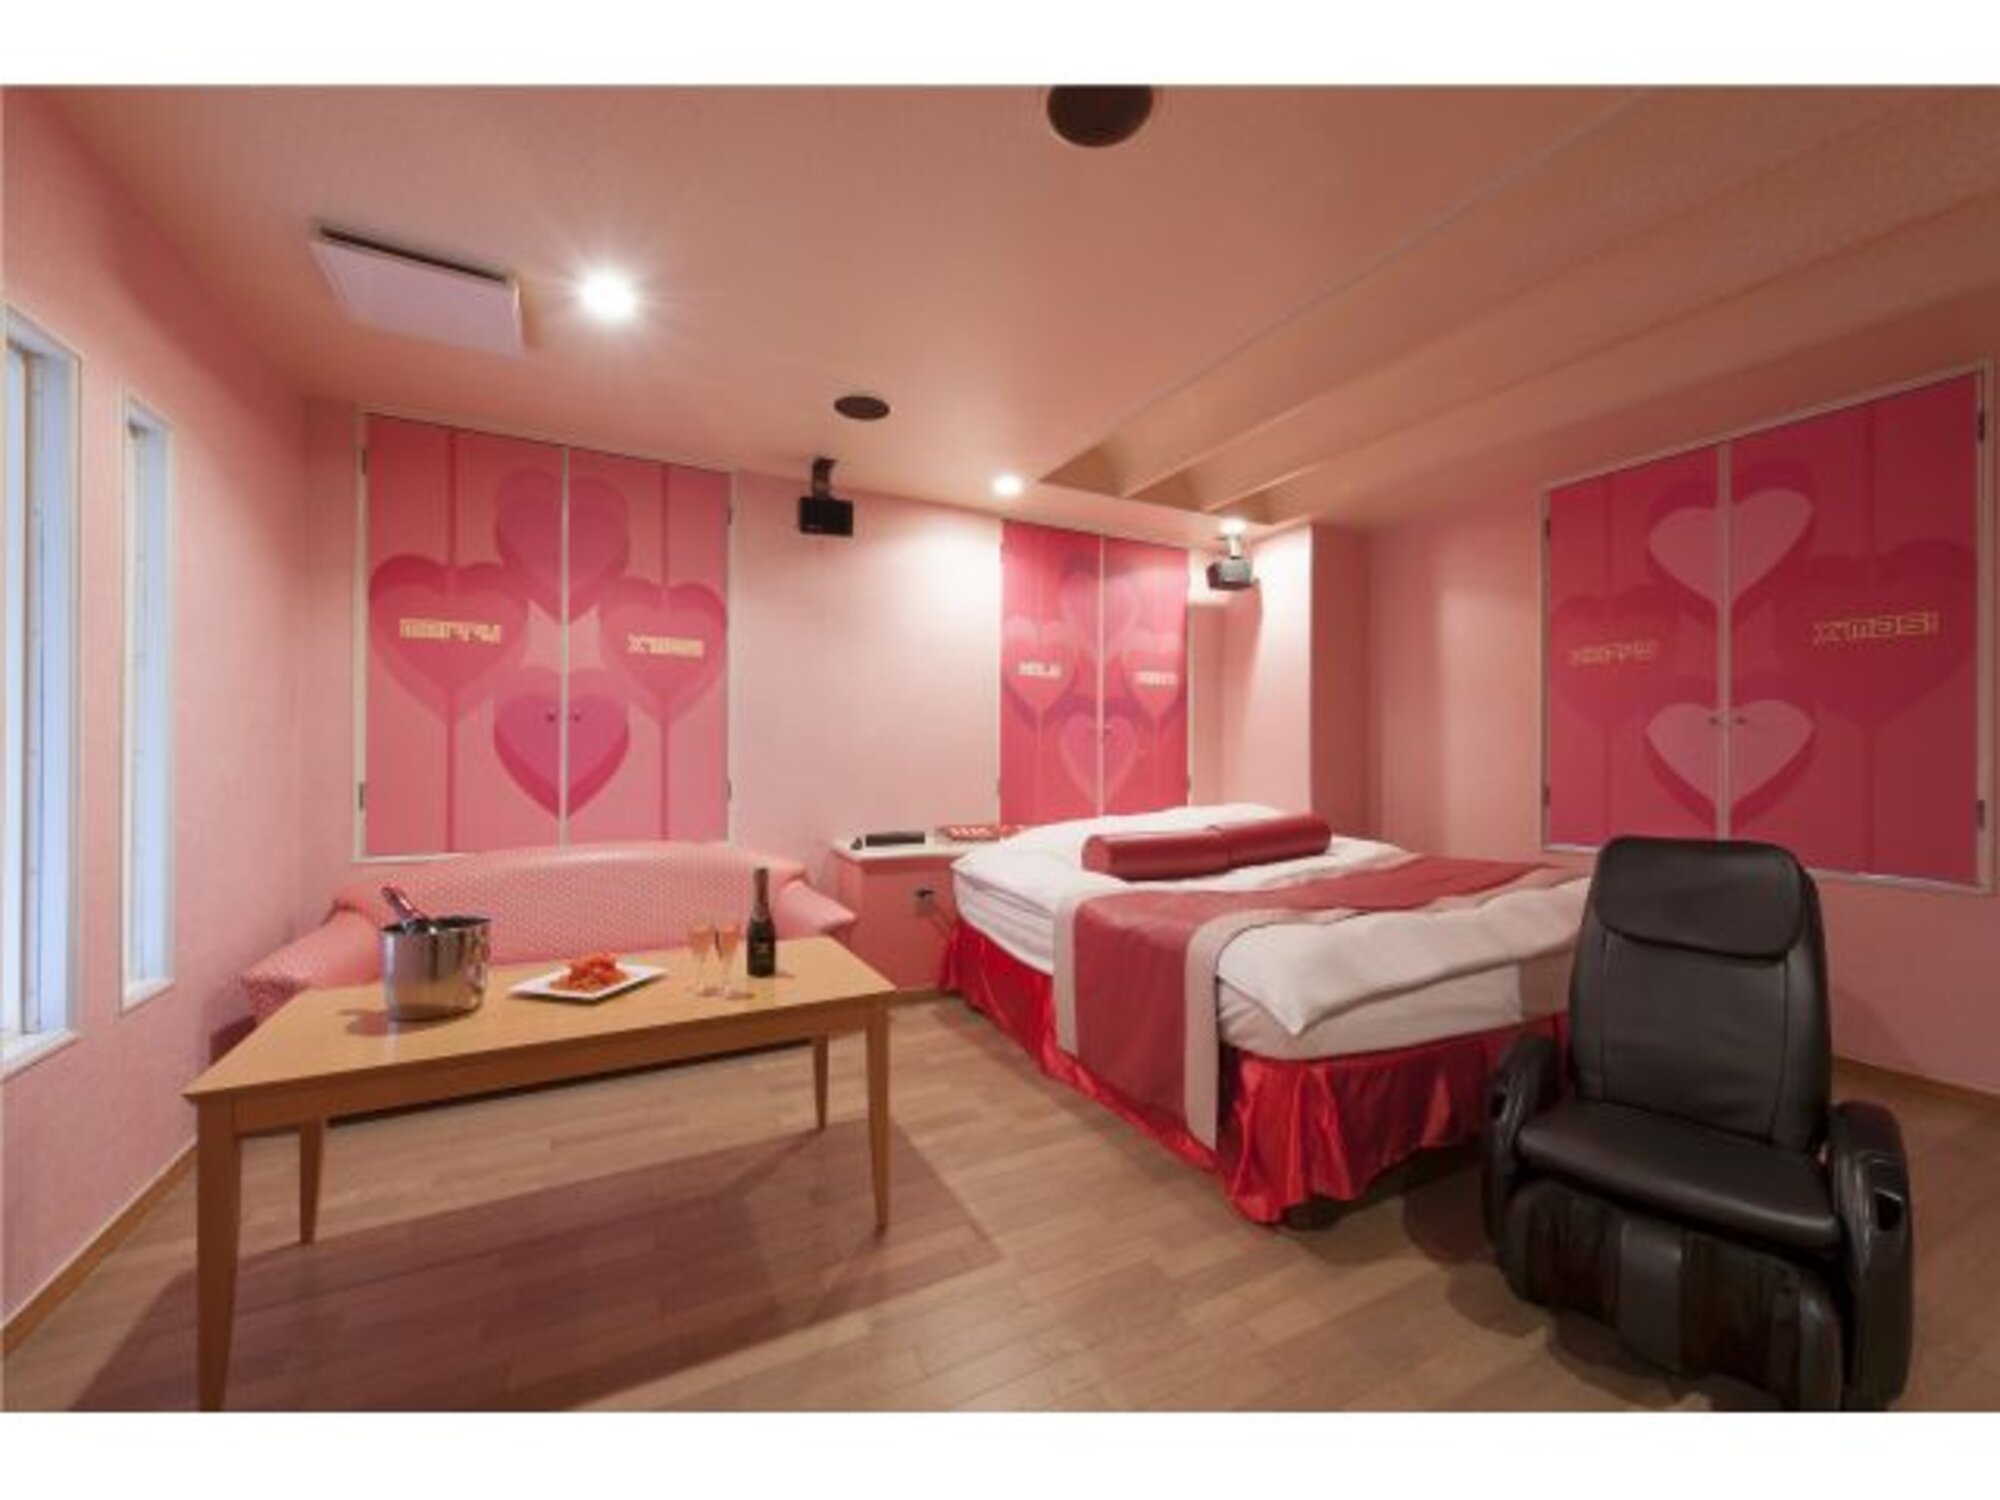 A szerelemhotel a rövid távú tartózkodásra alkalmas hotelek egy típusa, amely világszerte megtalálható, és elsősorban azzal a céllal működik, hogy a vendégek számára a szexhez szükséges egyedüllétet biztosítsa.
